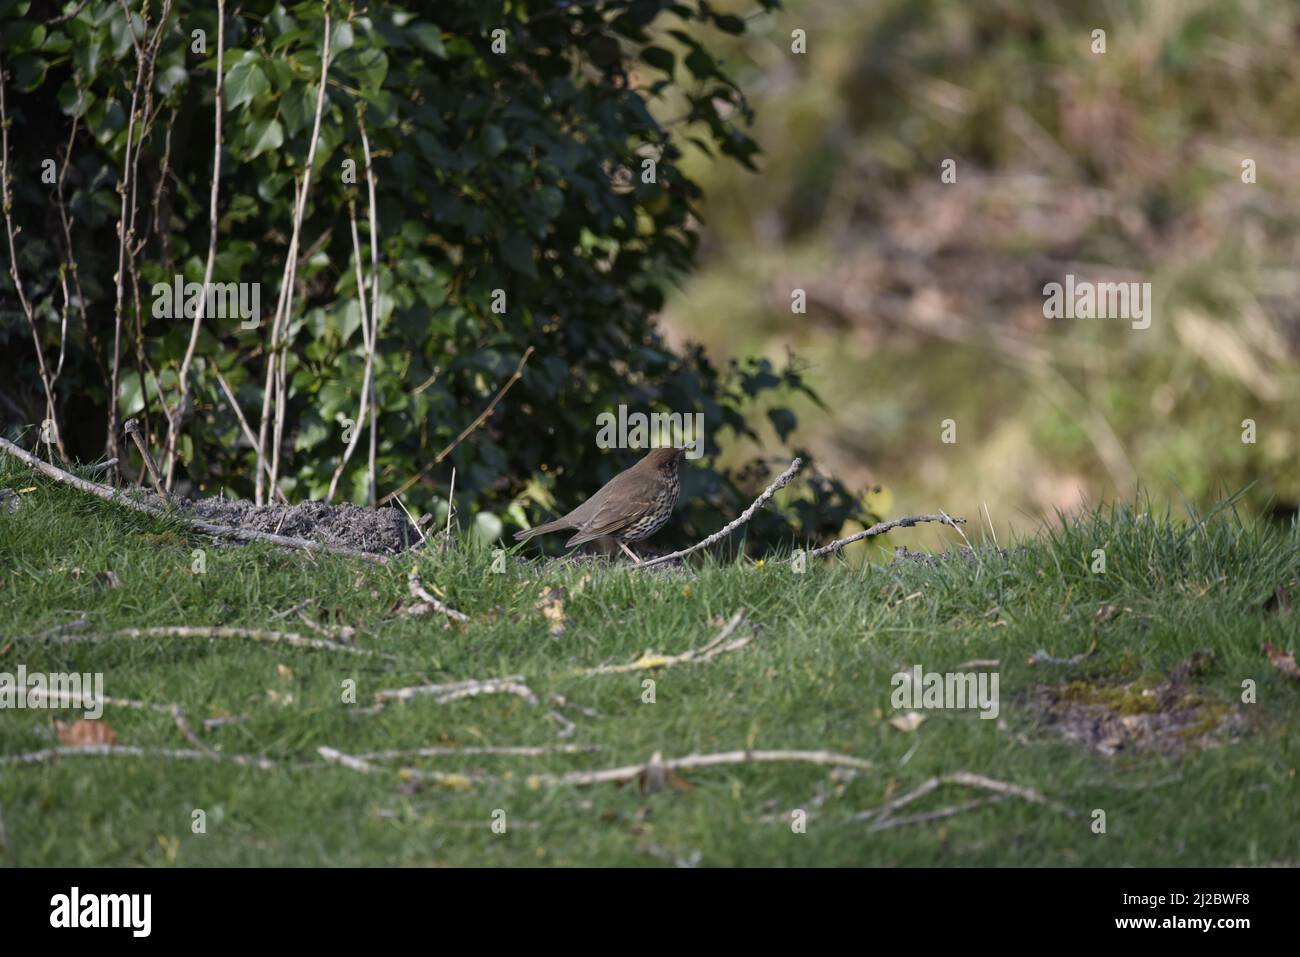 Canción Thrush (Turdus philomelos) en perfil derecho con un gusano en su pico, mirando a la derecha de la imagen, en el campo galés, Reino Unido en primavera Foto de stock